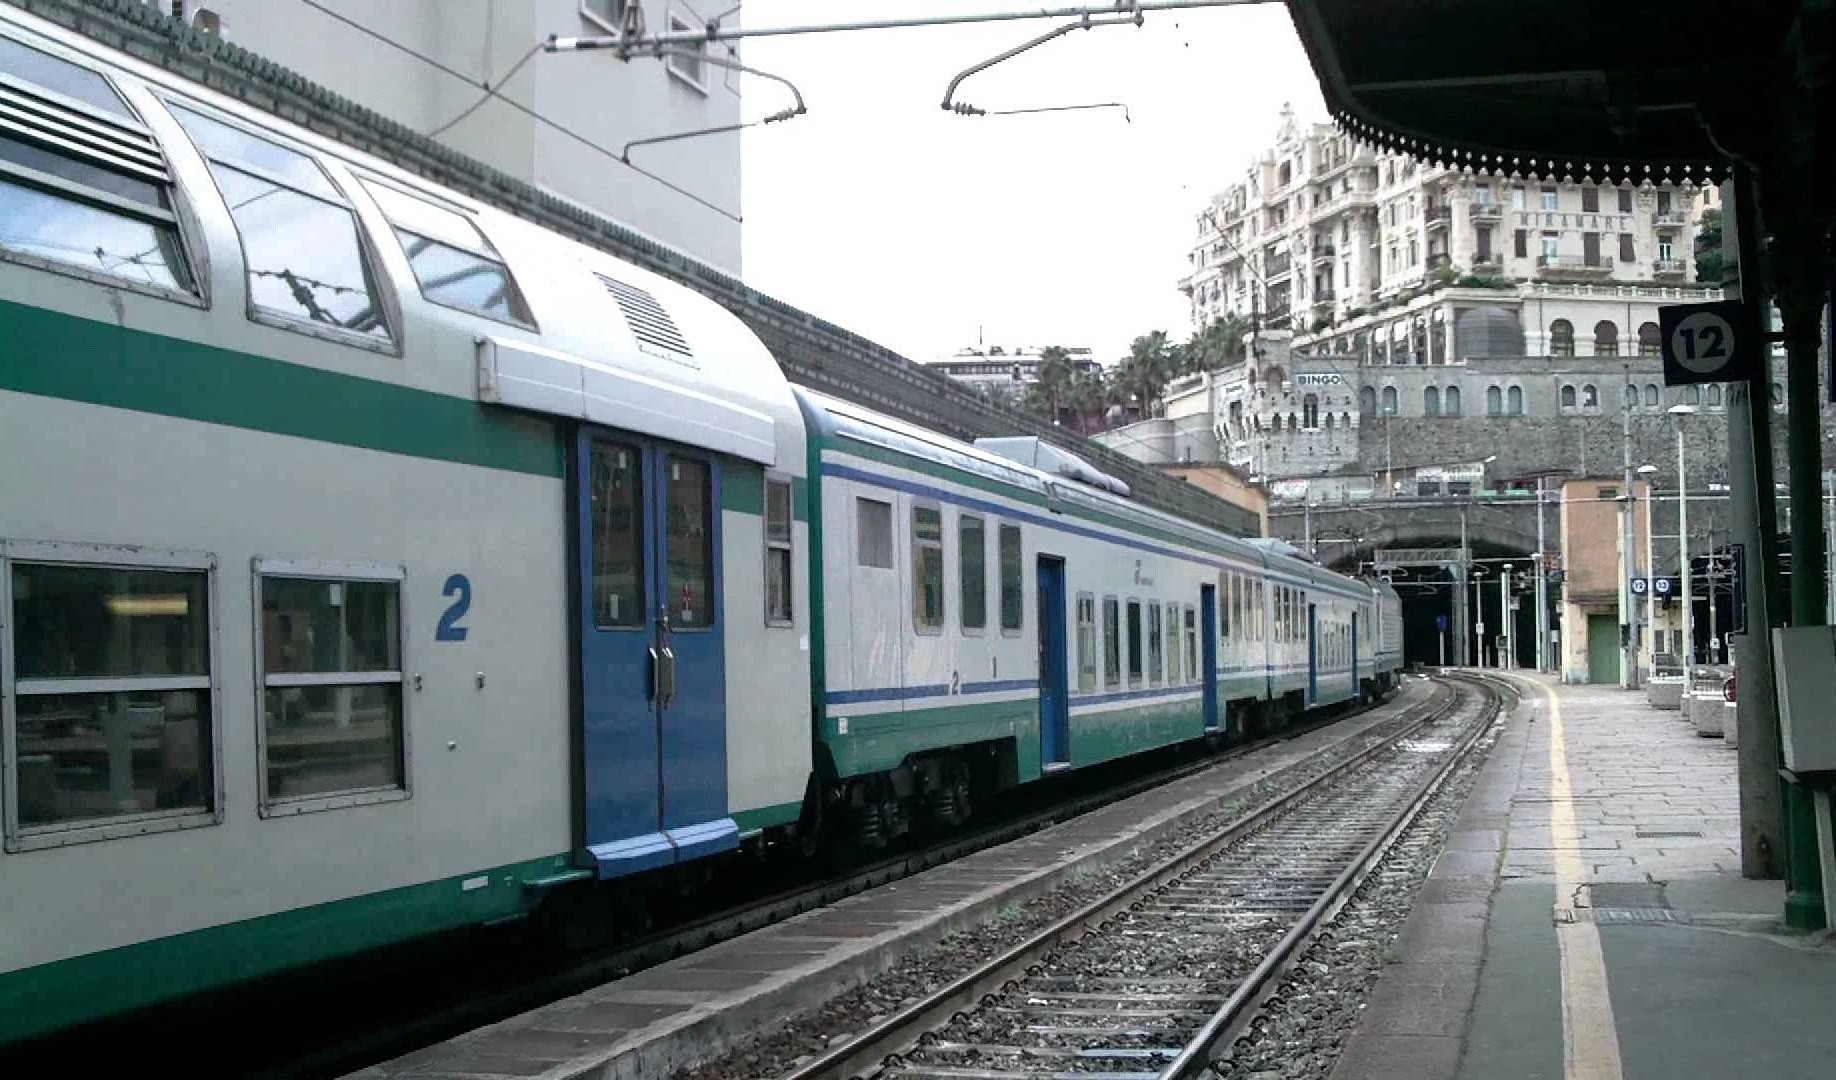 Trasporto ferroviario 2021, da Regione Liguria penale di oltre 2,6 milioni a Trenitalia